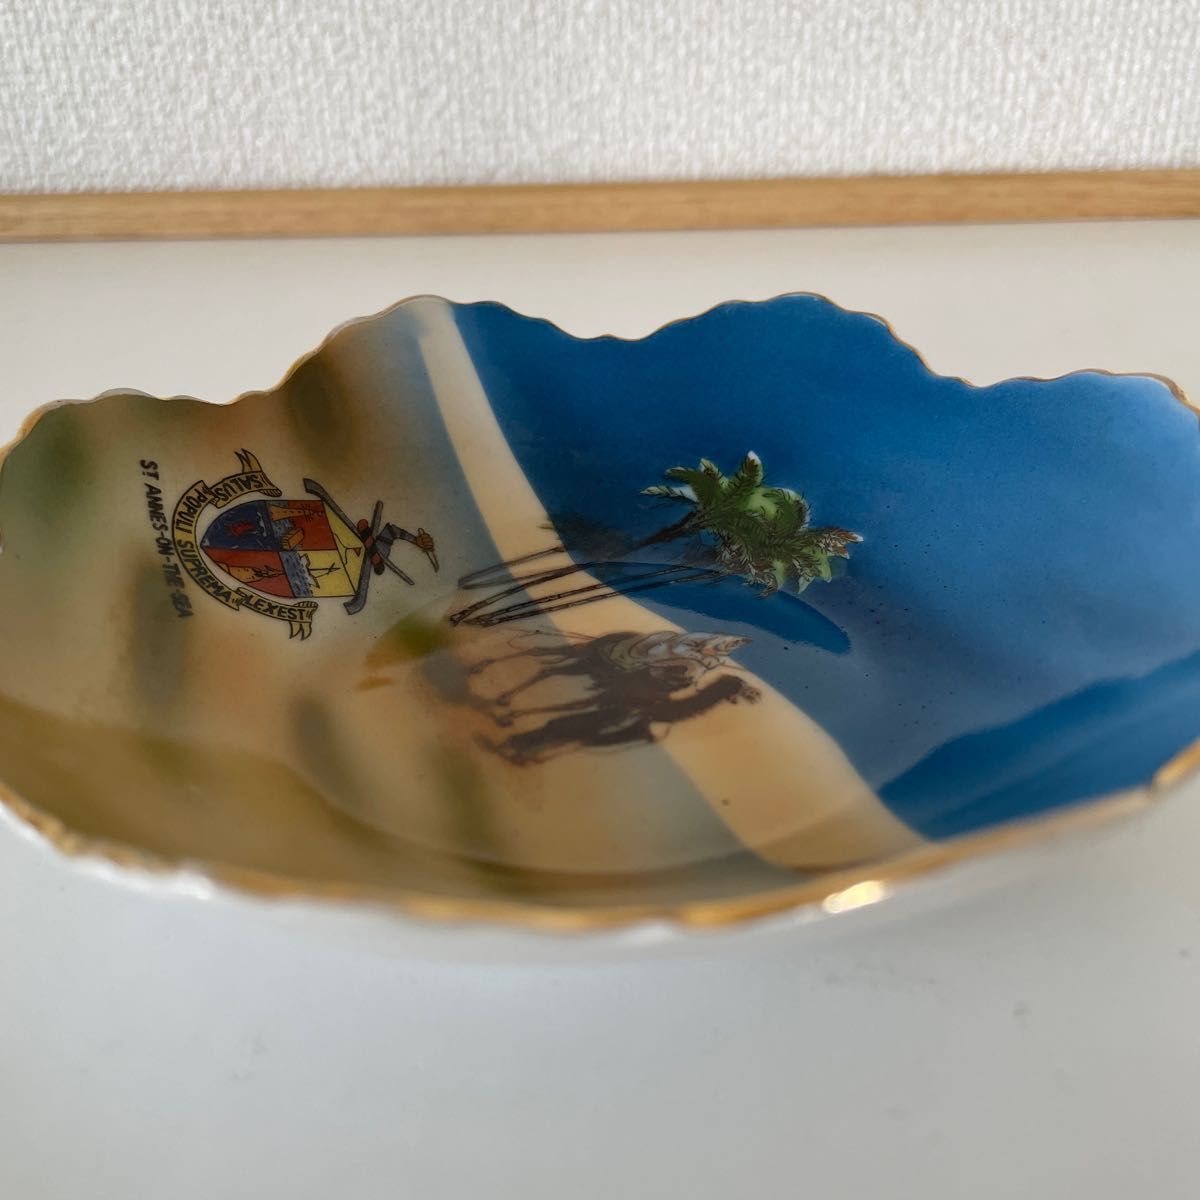 オールドノリタケ・八片皿・１９１１年・英国輸出・１３.３cm×３.３cm・ライドオンキャメル（昼）・紋章入り・希少